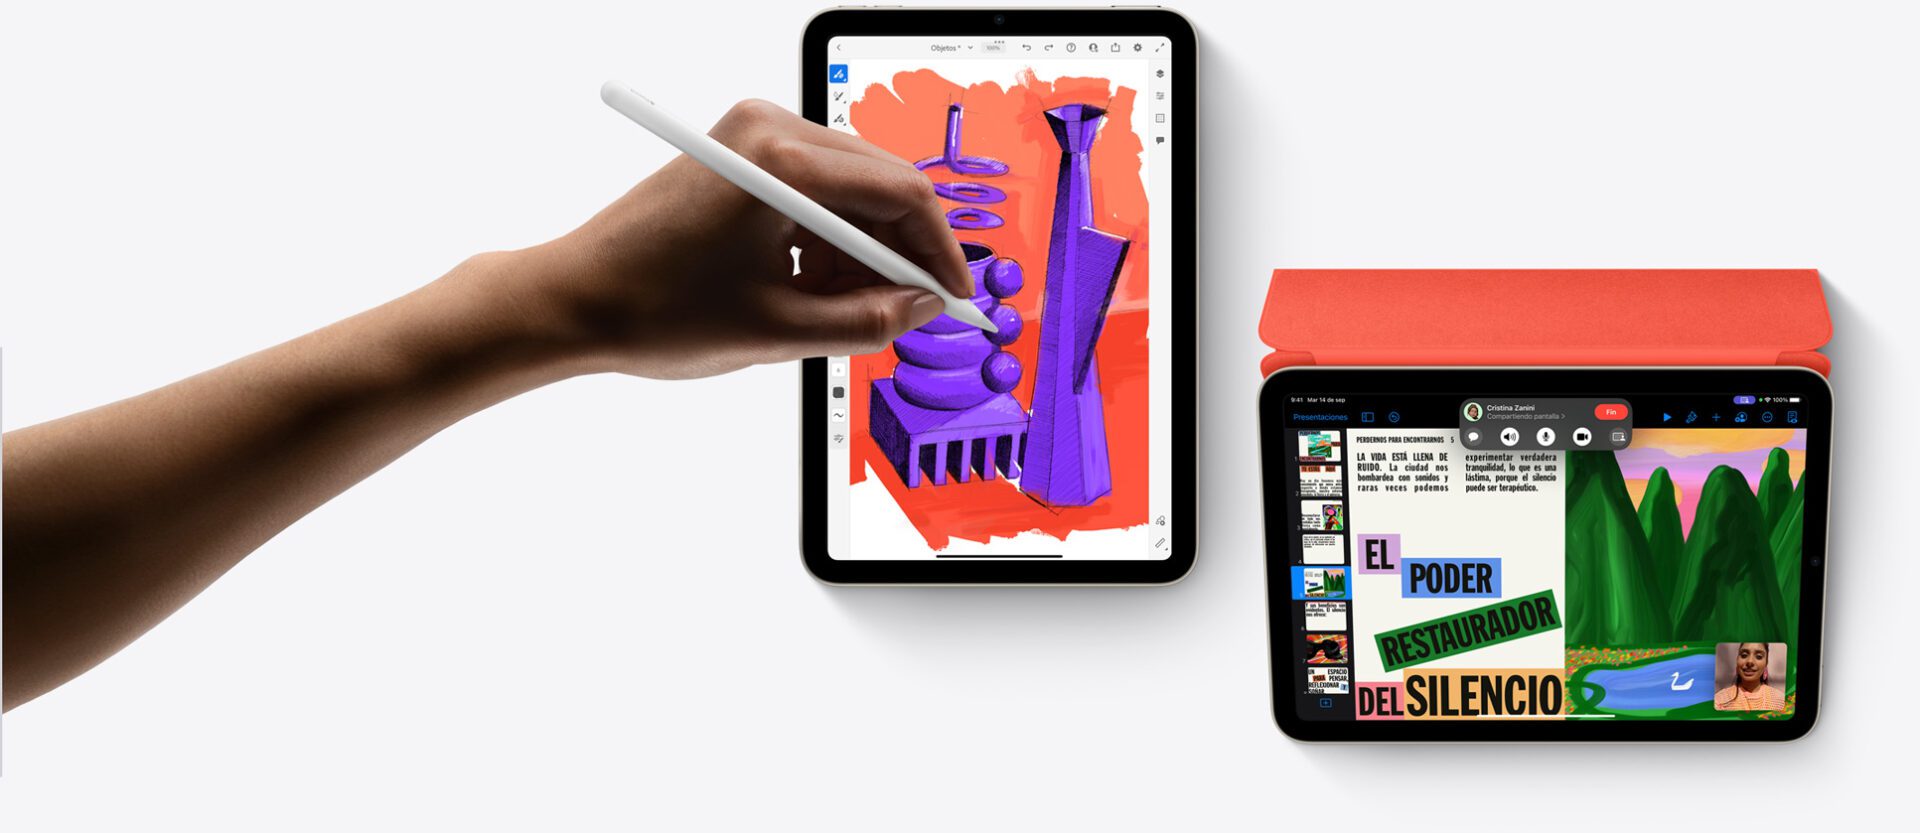 Dibuja en el iPad mini con el Apple Pencil de segunda generación y protégelo con la funda Smart Folio, que se pliega para que la puedas usar de soporte.